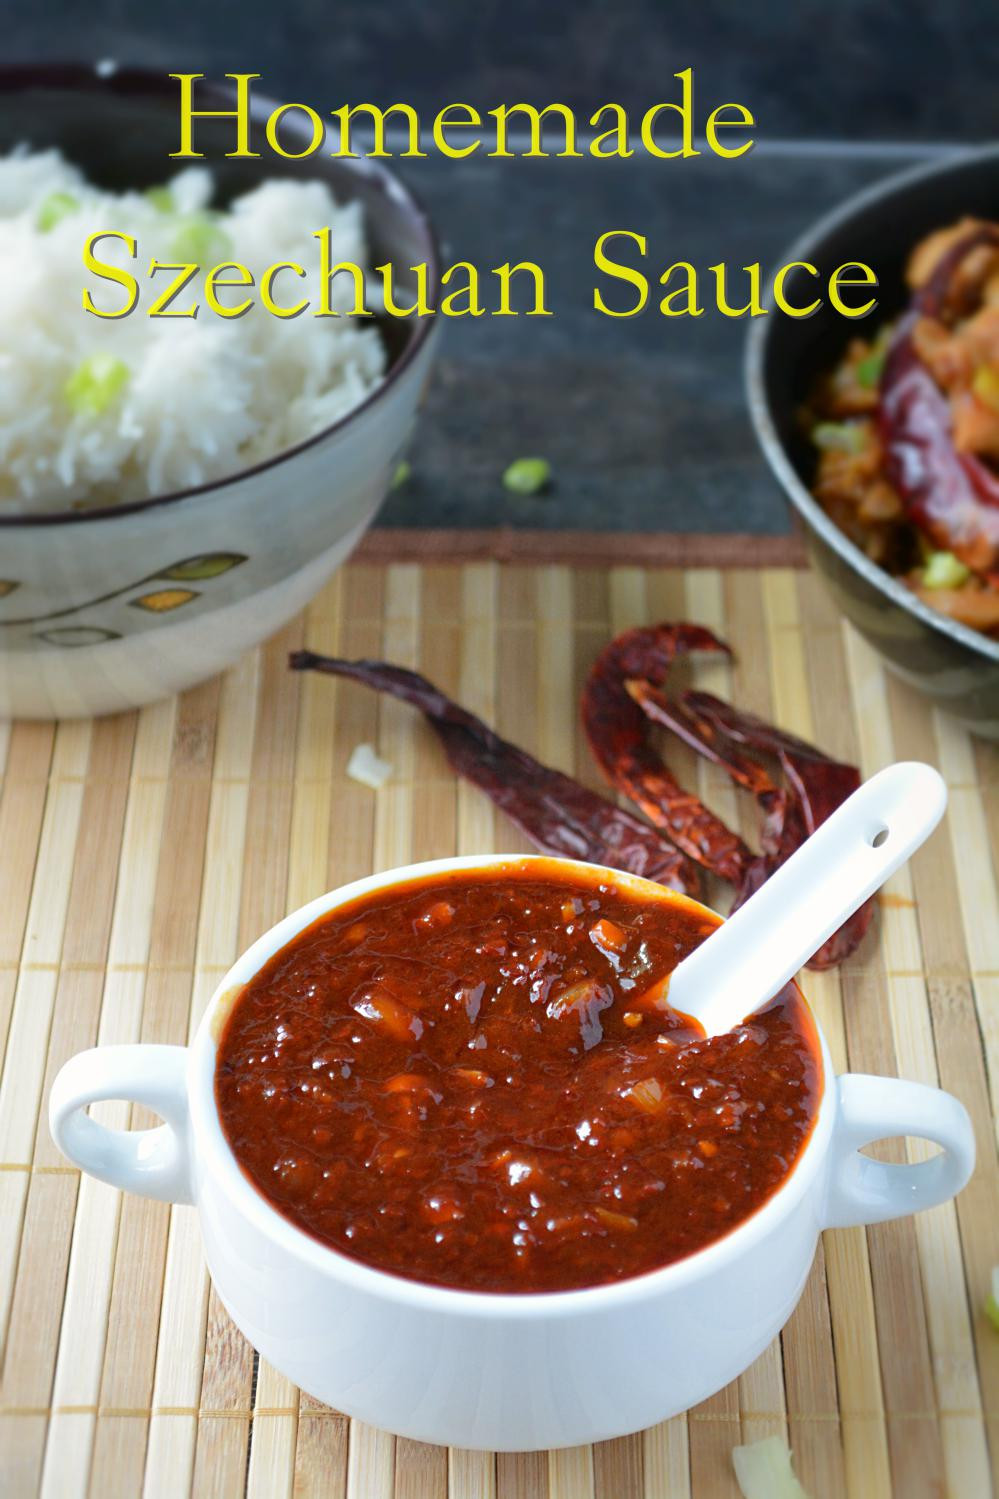 Asian Sauce Recipes
 Homemade Szechuan Sauce recipe from scratch Chinese